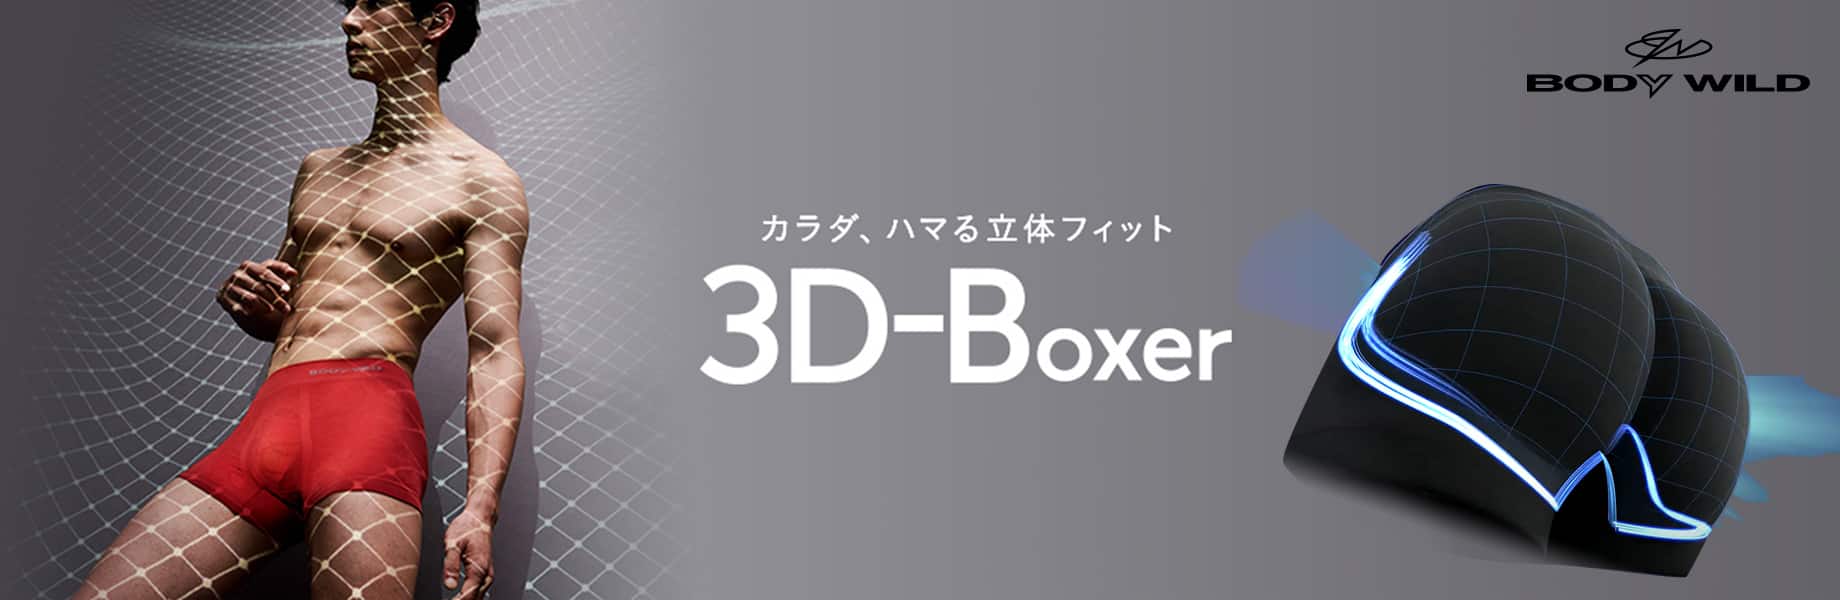 BODY WILD 3D-Boxer メンズ